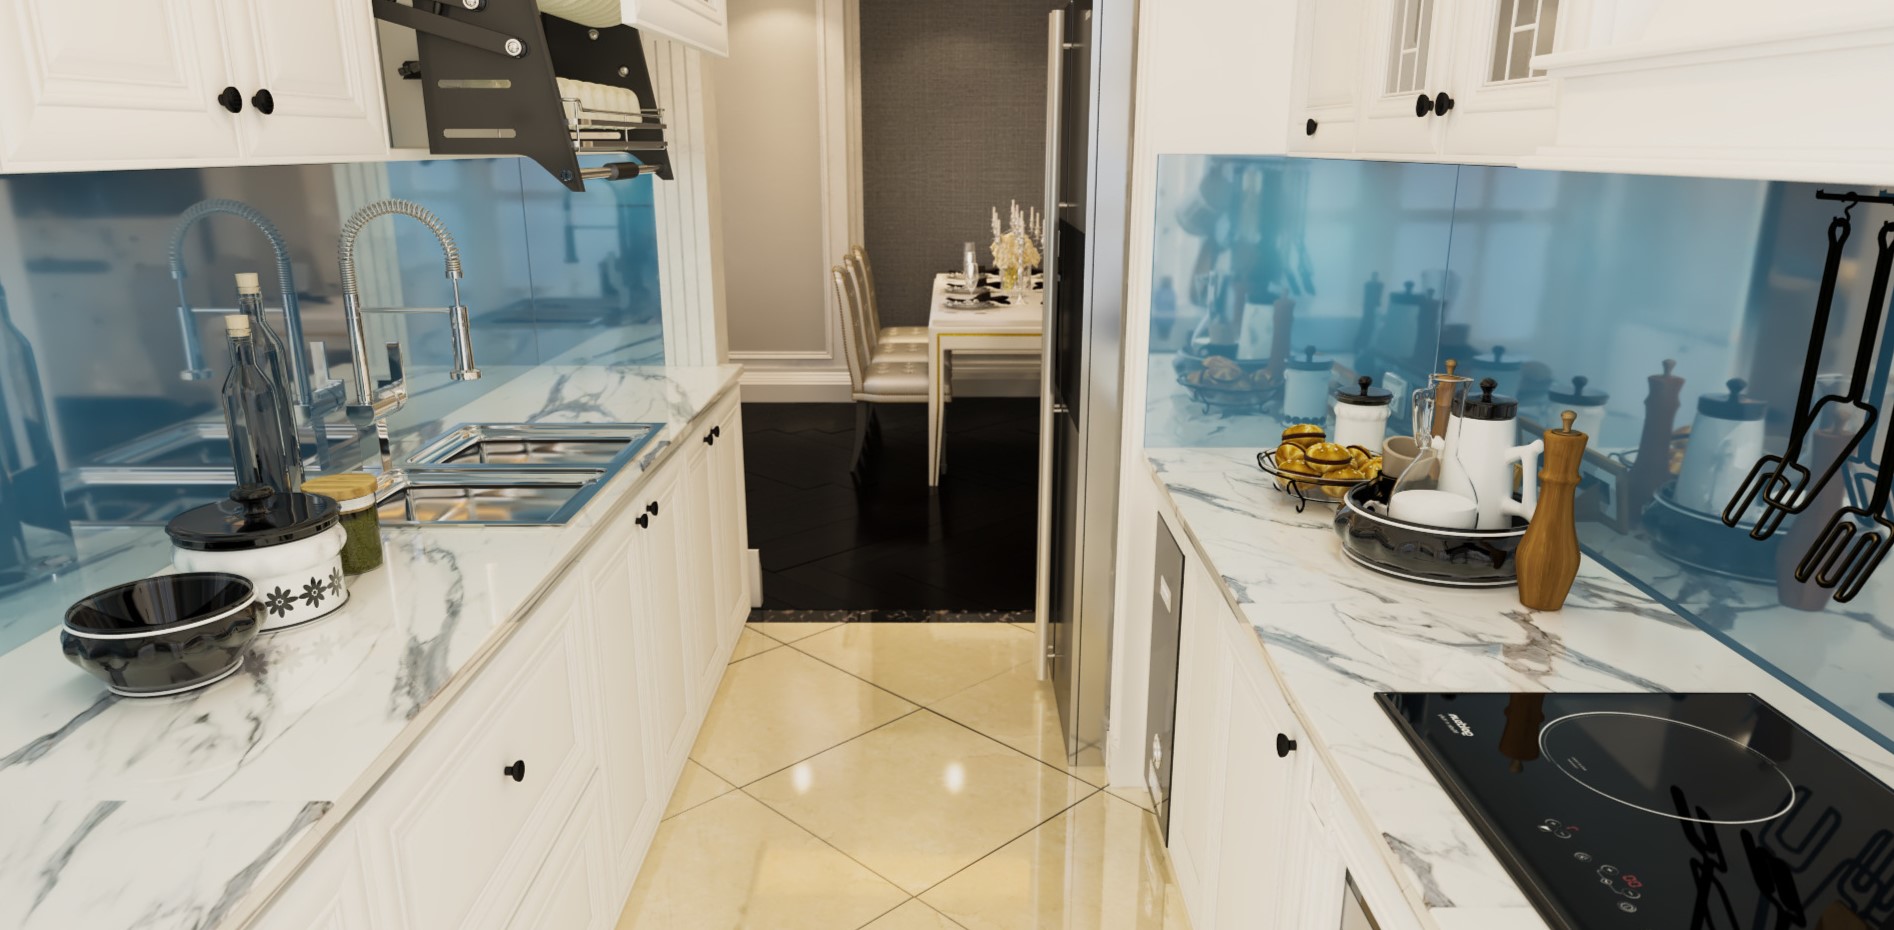 Белый кухонный гарнитур и мраморная столешница визуально расширят пространство маленькой кухни